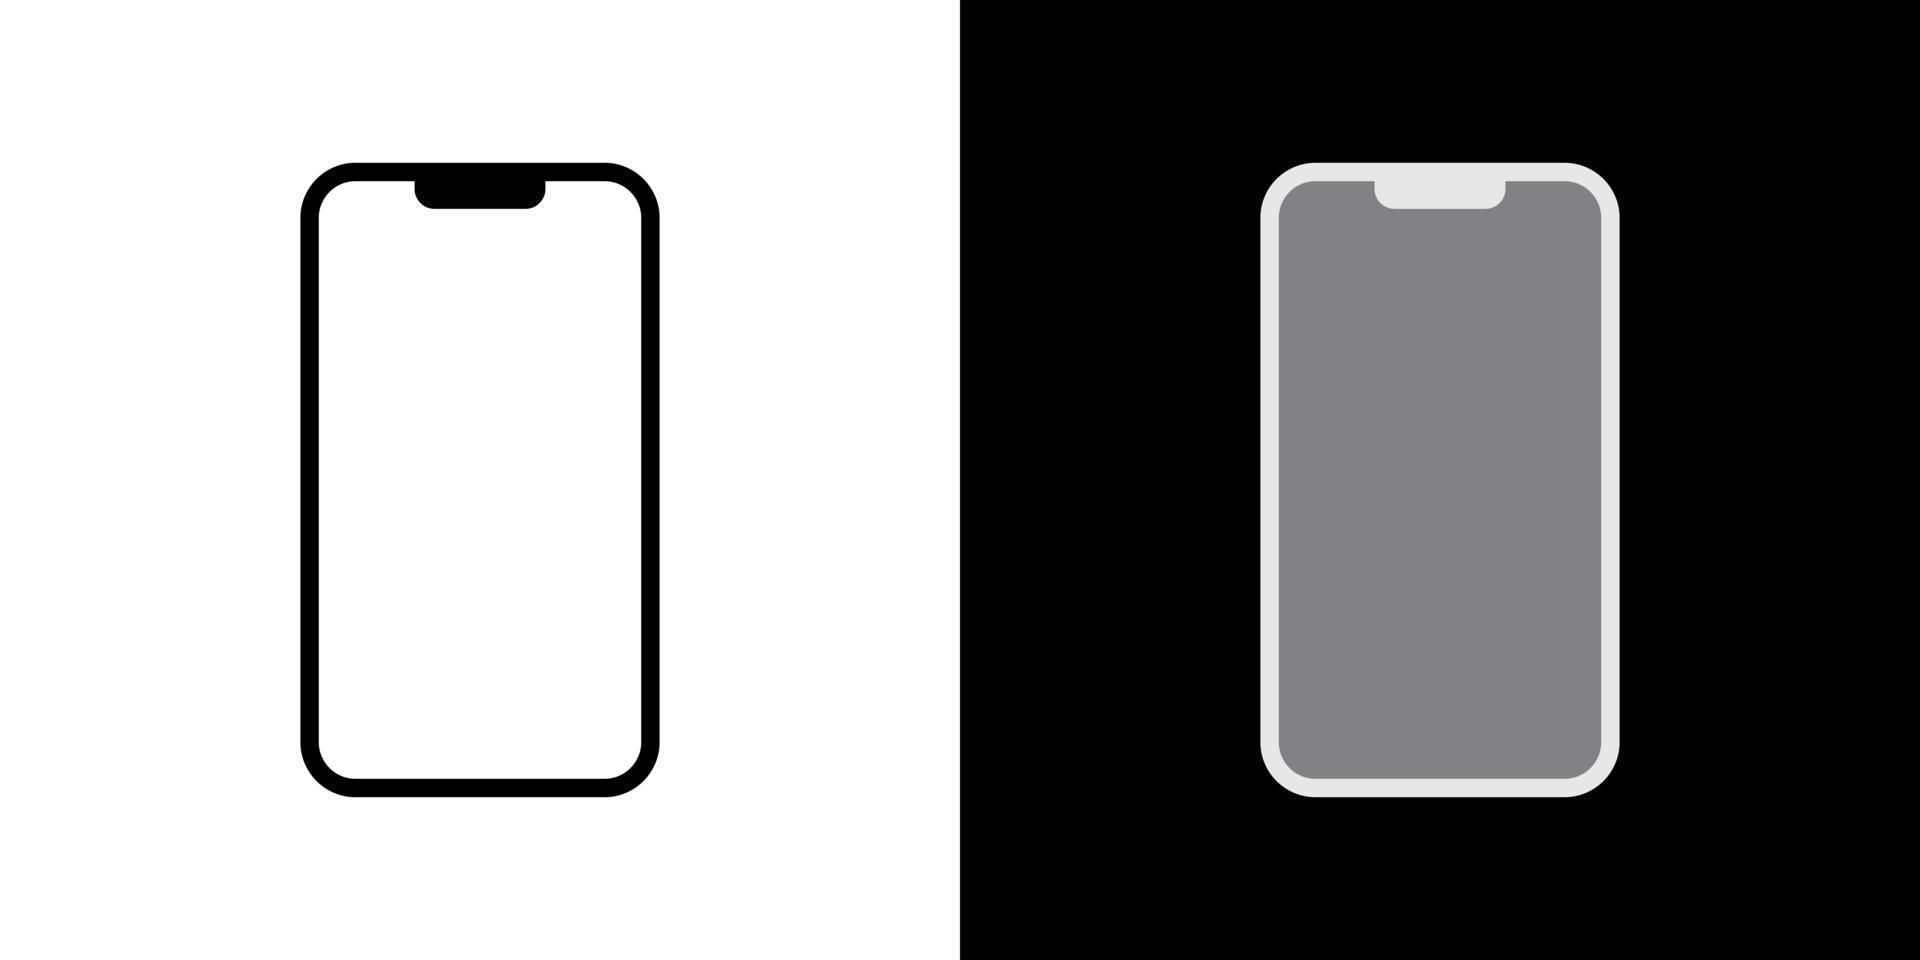 teléfono inteligente moderno, vector de icono de teléfono celular en estilo monocromo